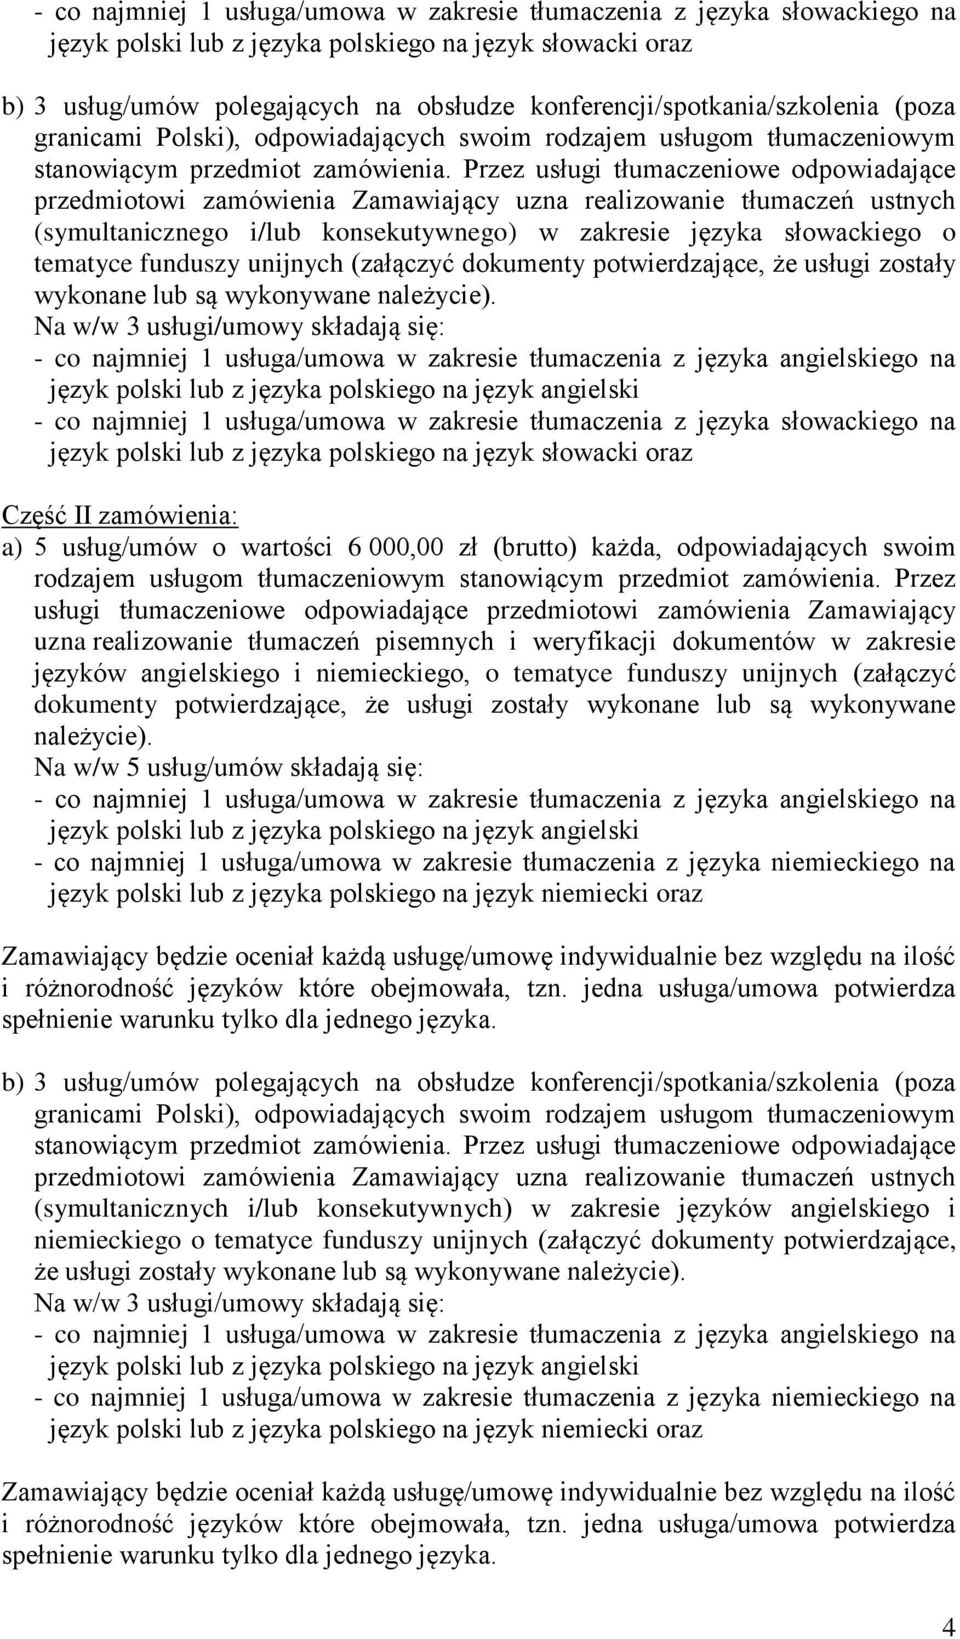 Przez usługi tłumaczeniowe odpowiadające przedmiotowi zamówienia Zamawiający uzna realizowanie tłumaczeń ustnych (symultanicznego i/lub konsekutywnego) w zakresie języka słowackiego o tematyce